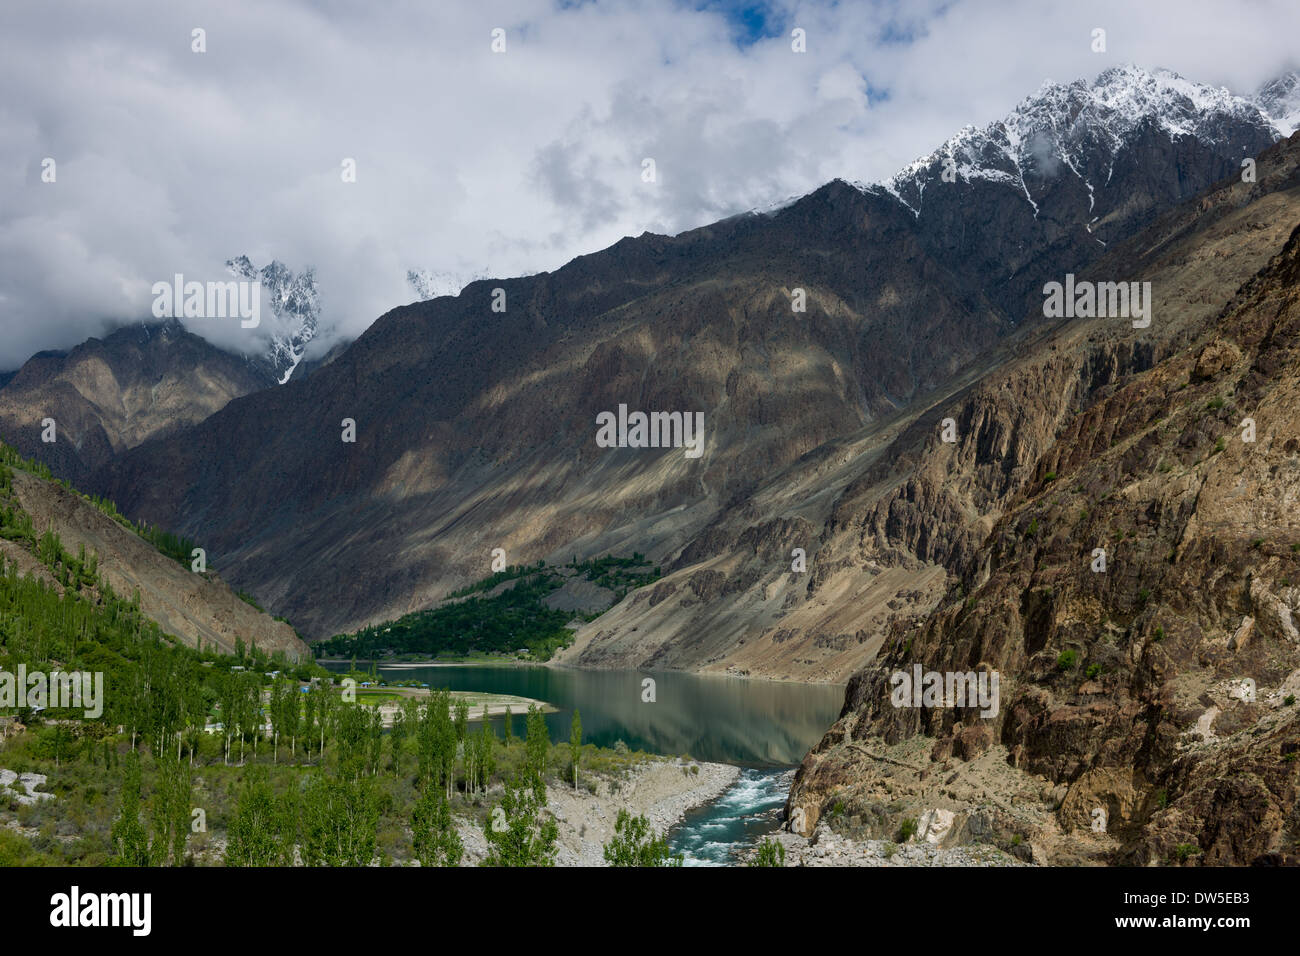 Lac Khalti flanquée par les parois abruptes de la rivière Ghizar (Gilgit River Valley), vu depuis le Shandur-Gilgit Road, Gilgit-Baltistan, Pakistan Banque D'Images